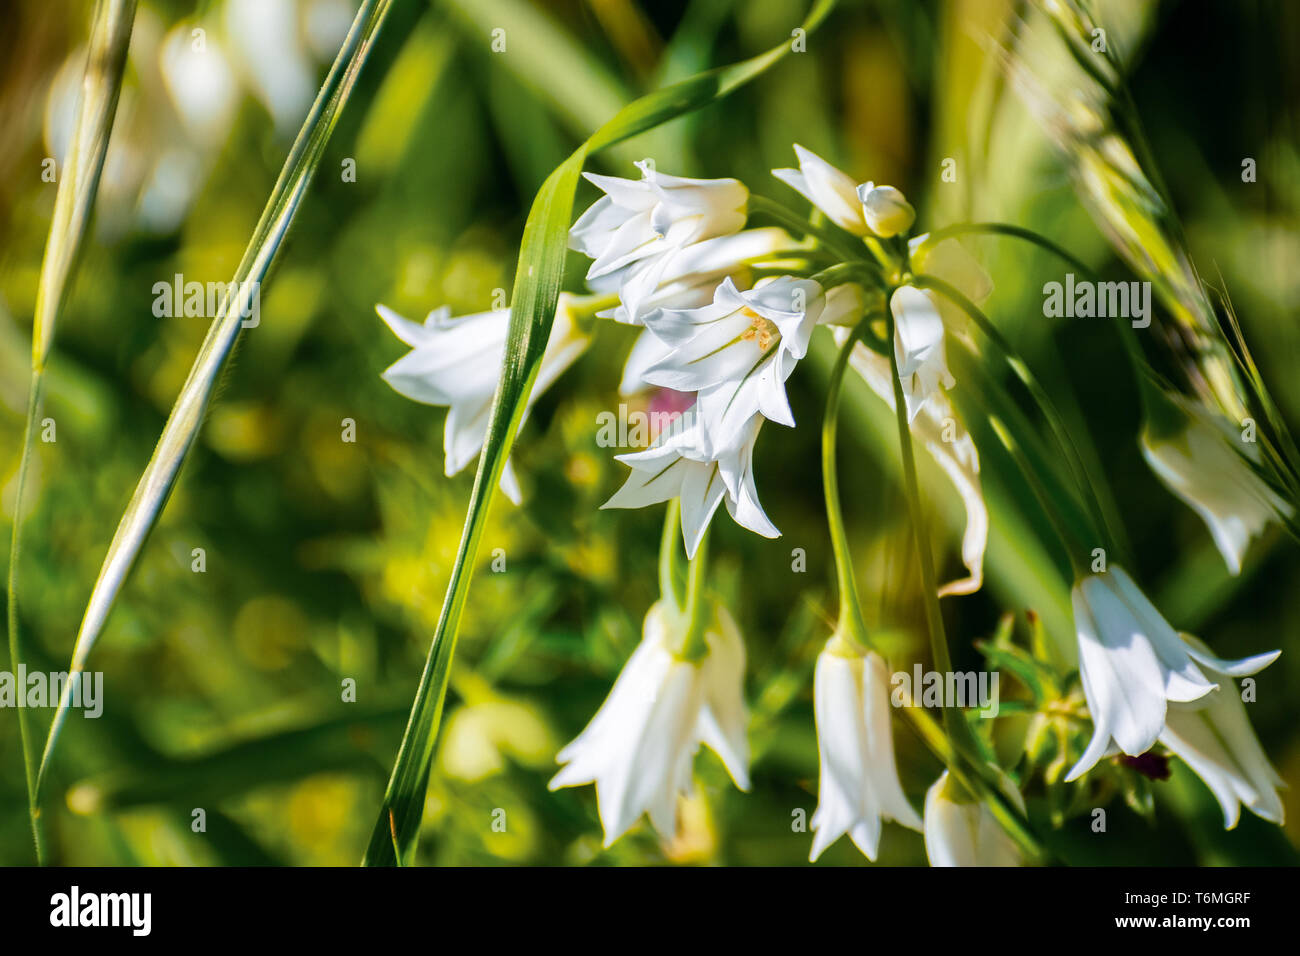 Cerca de maleza de cebolla (Allium triquetrum) wildflower, nativo de la cuenca del Mediterráneo; no nativo en California Foto de stock